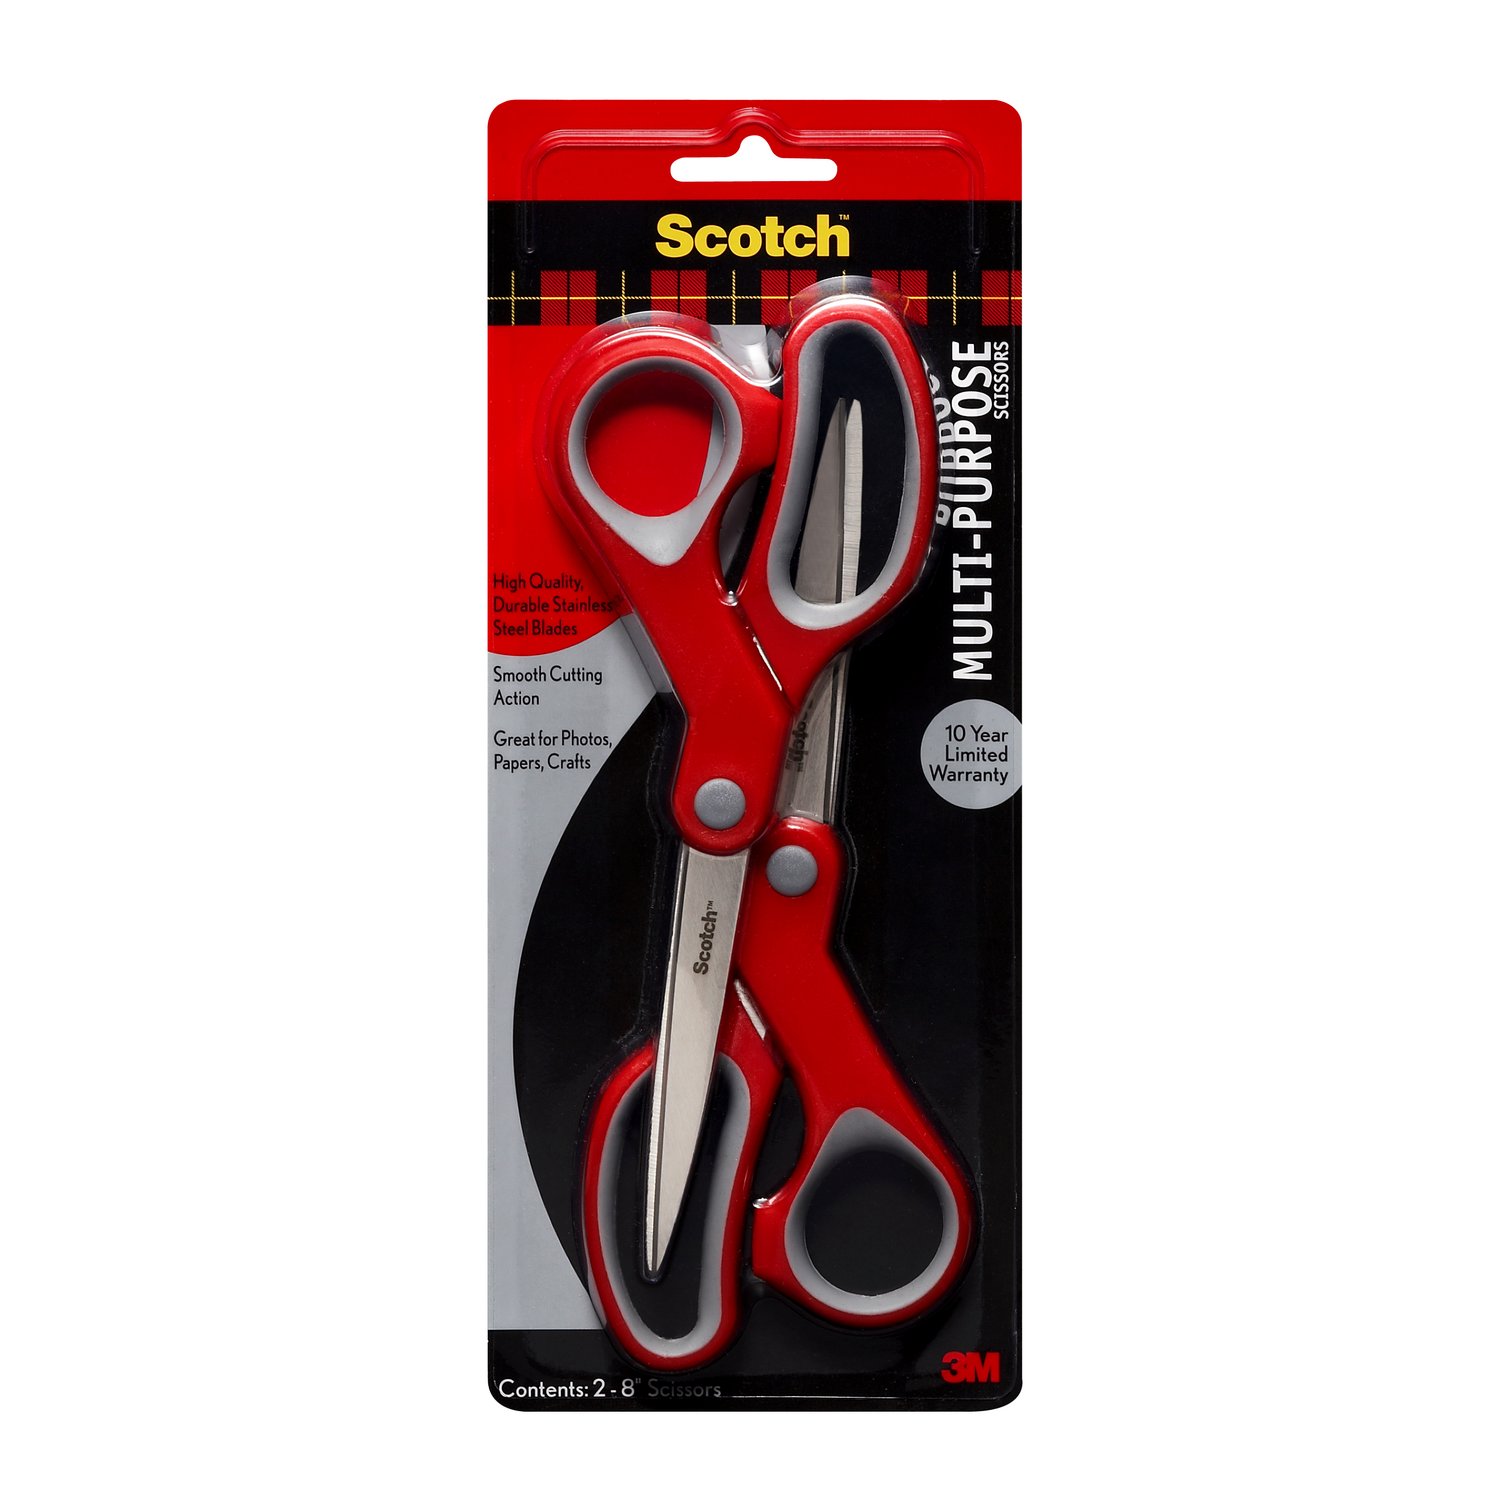 7100268579 - Scotch Printed Multi Purpose Scissors 1428-P22-EF, 8 in